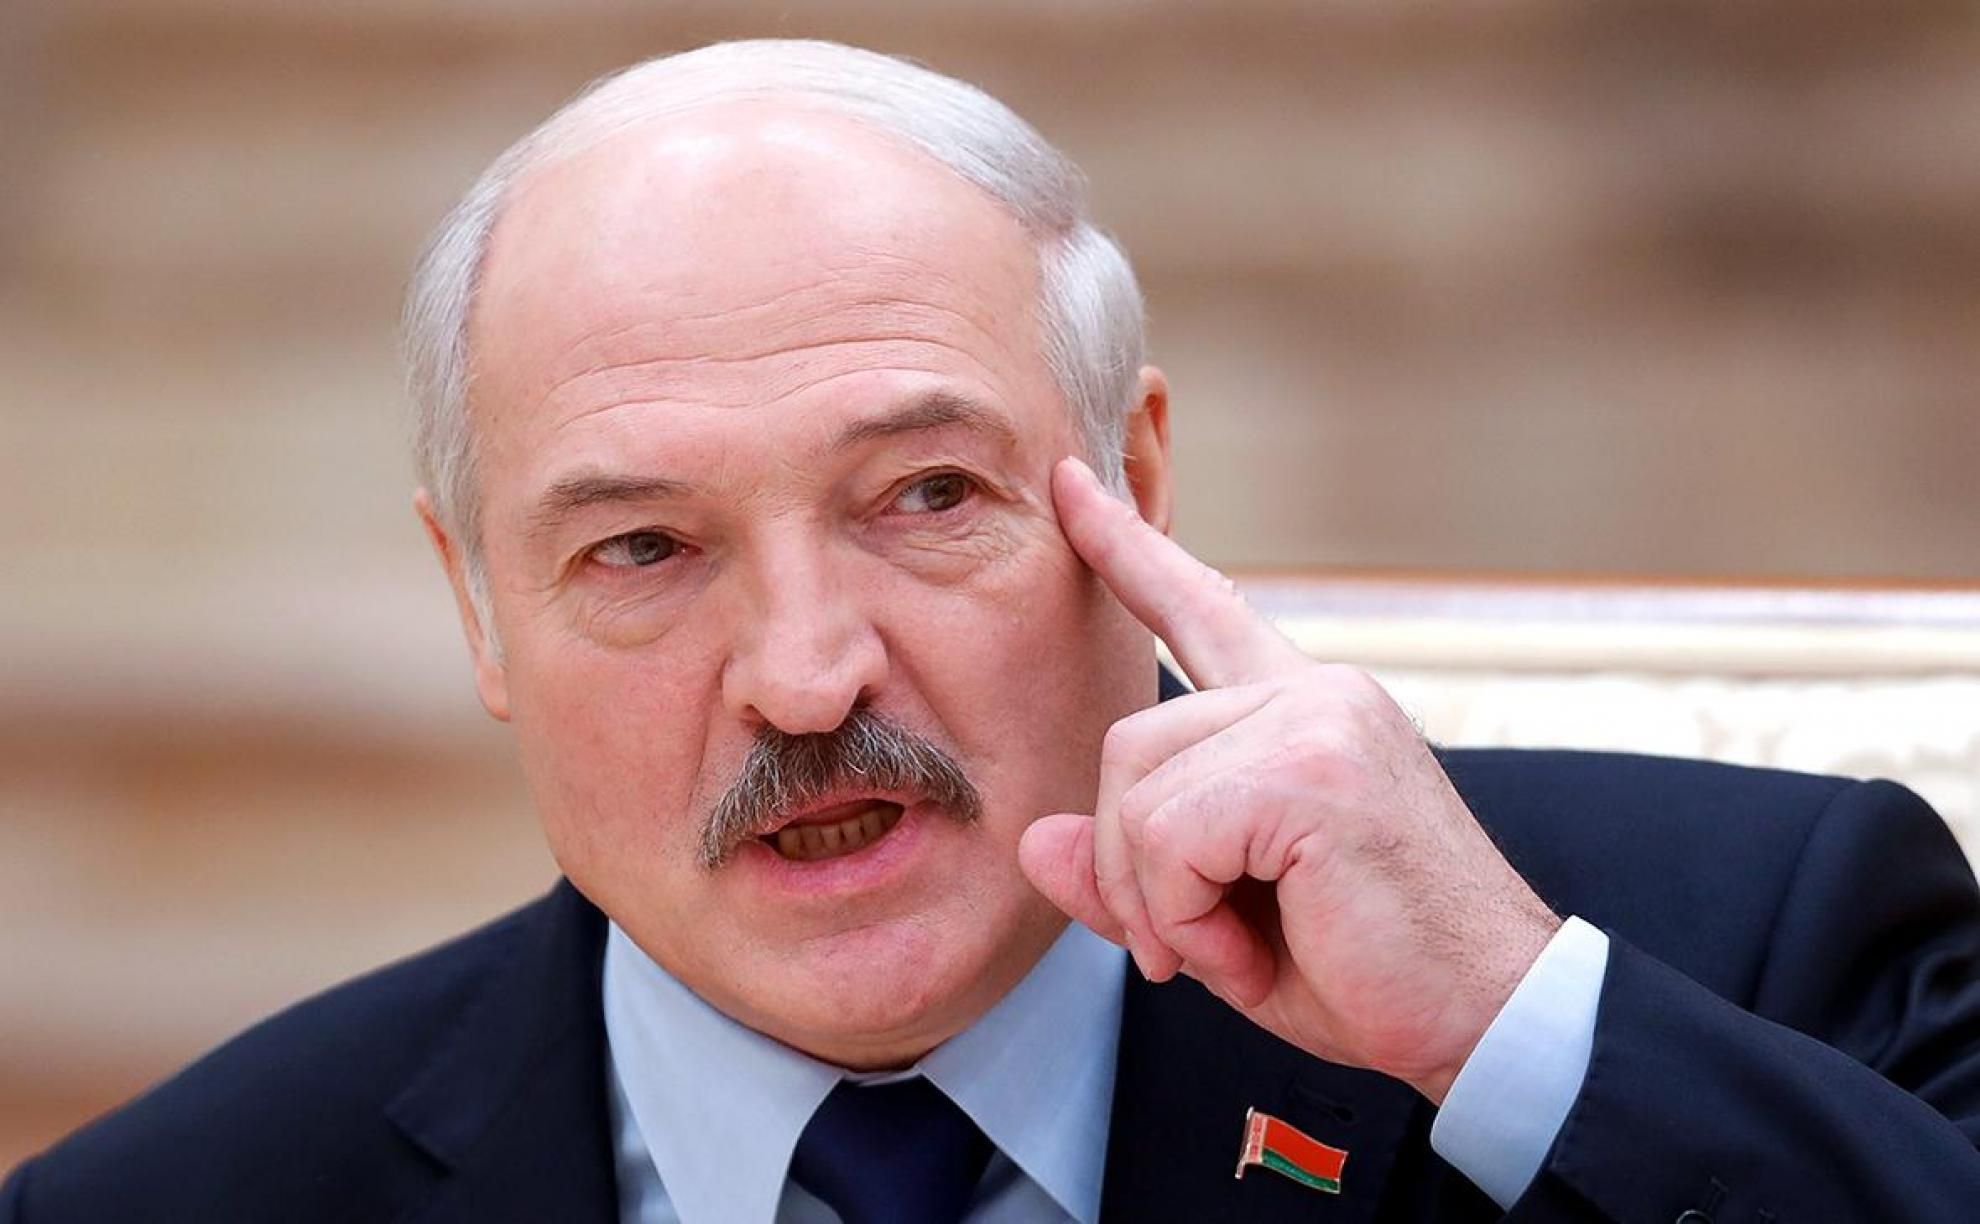 ЄС готує новий пакет санкцій проти режиму Лукашенка, – журналіст - новини Білорусь - 24 Канал